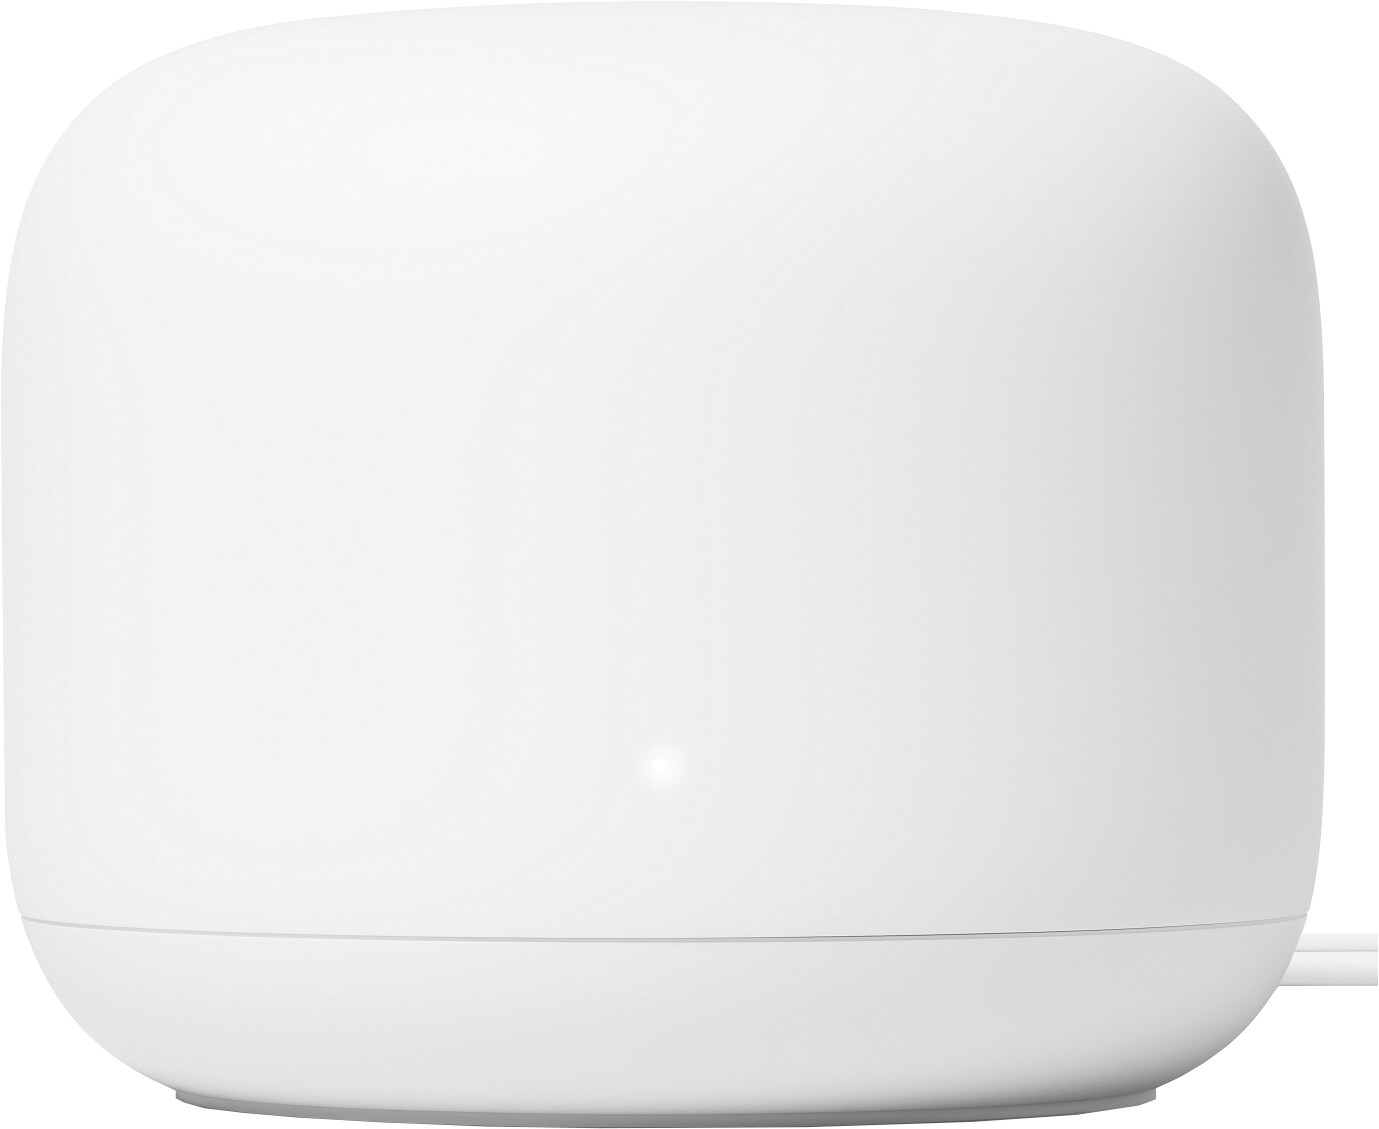 Google Nest WiFi router - Elkjøp